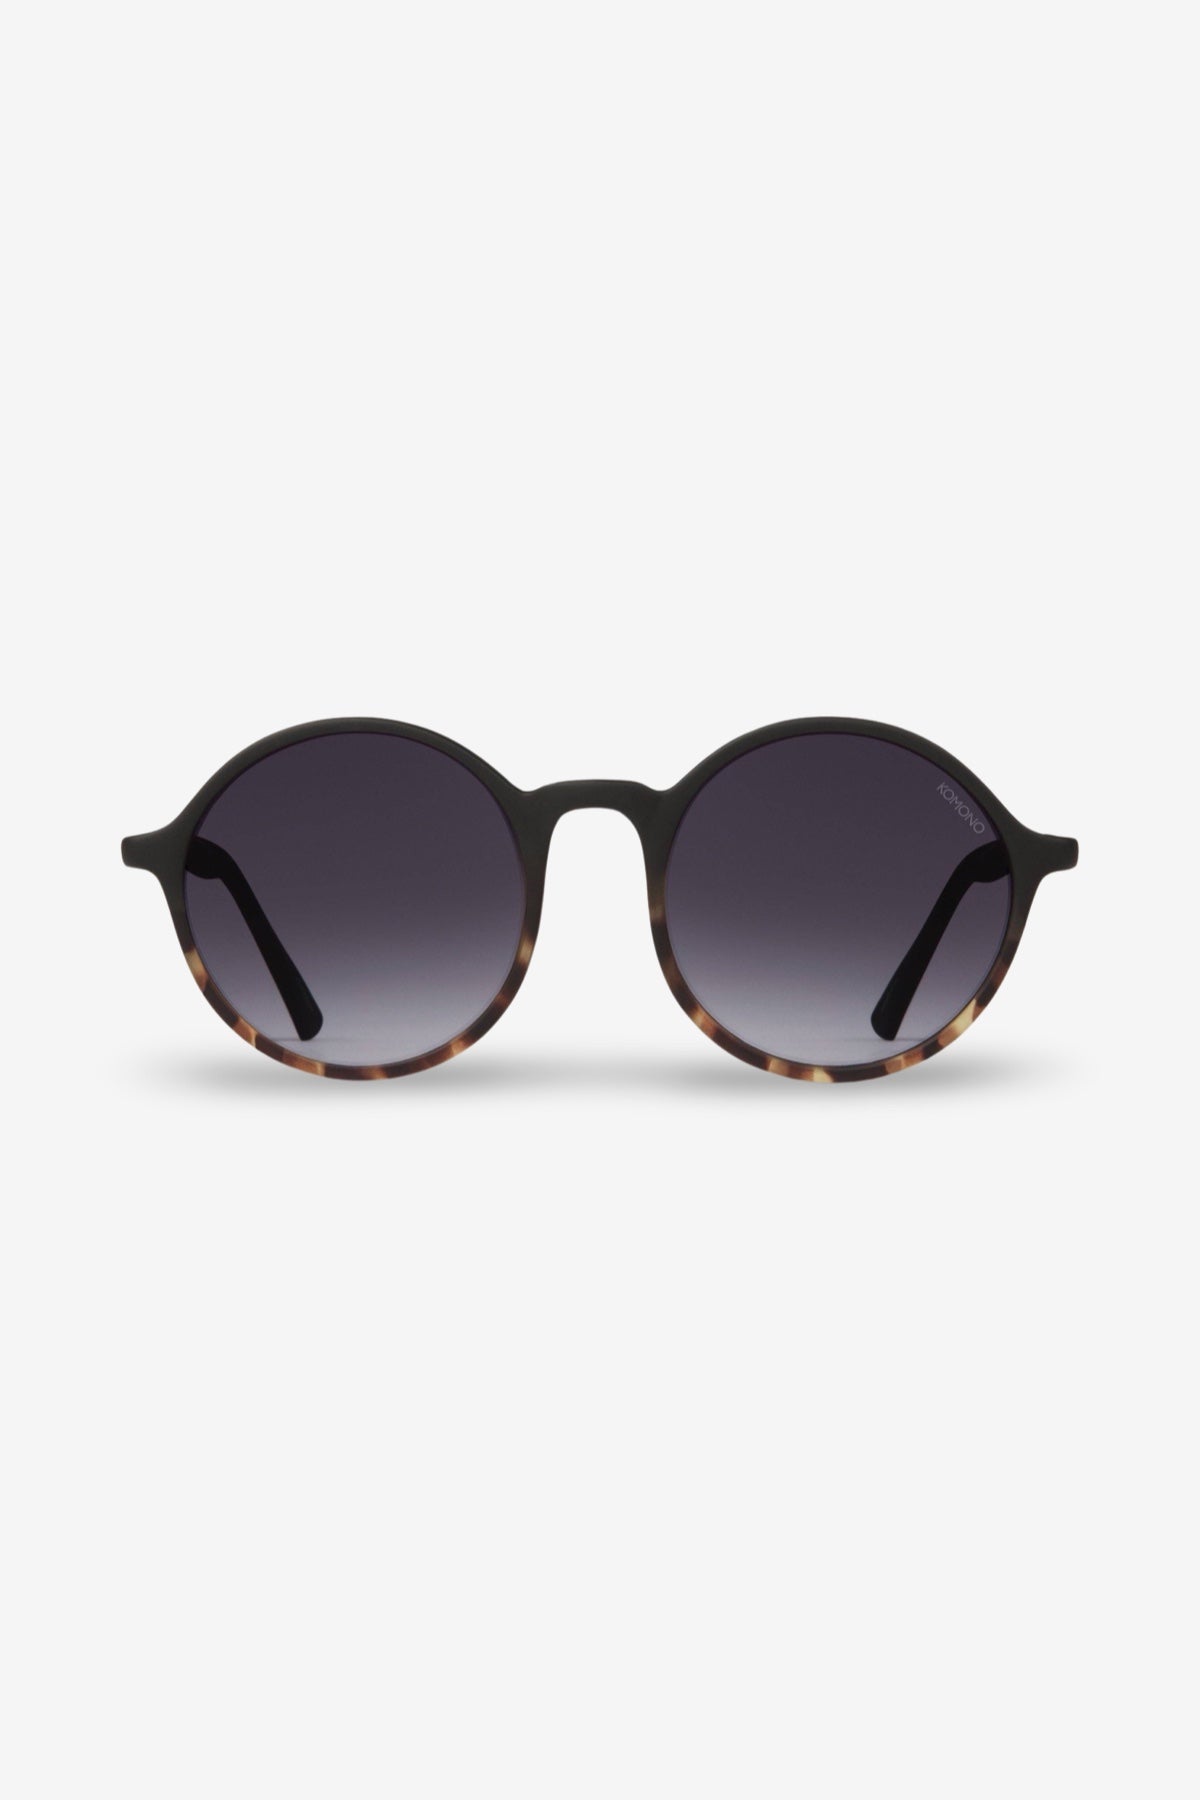 Madison Sunglasses | Black Tortoise